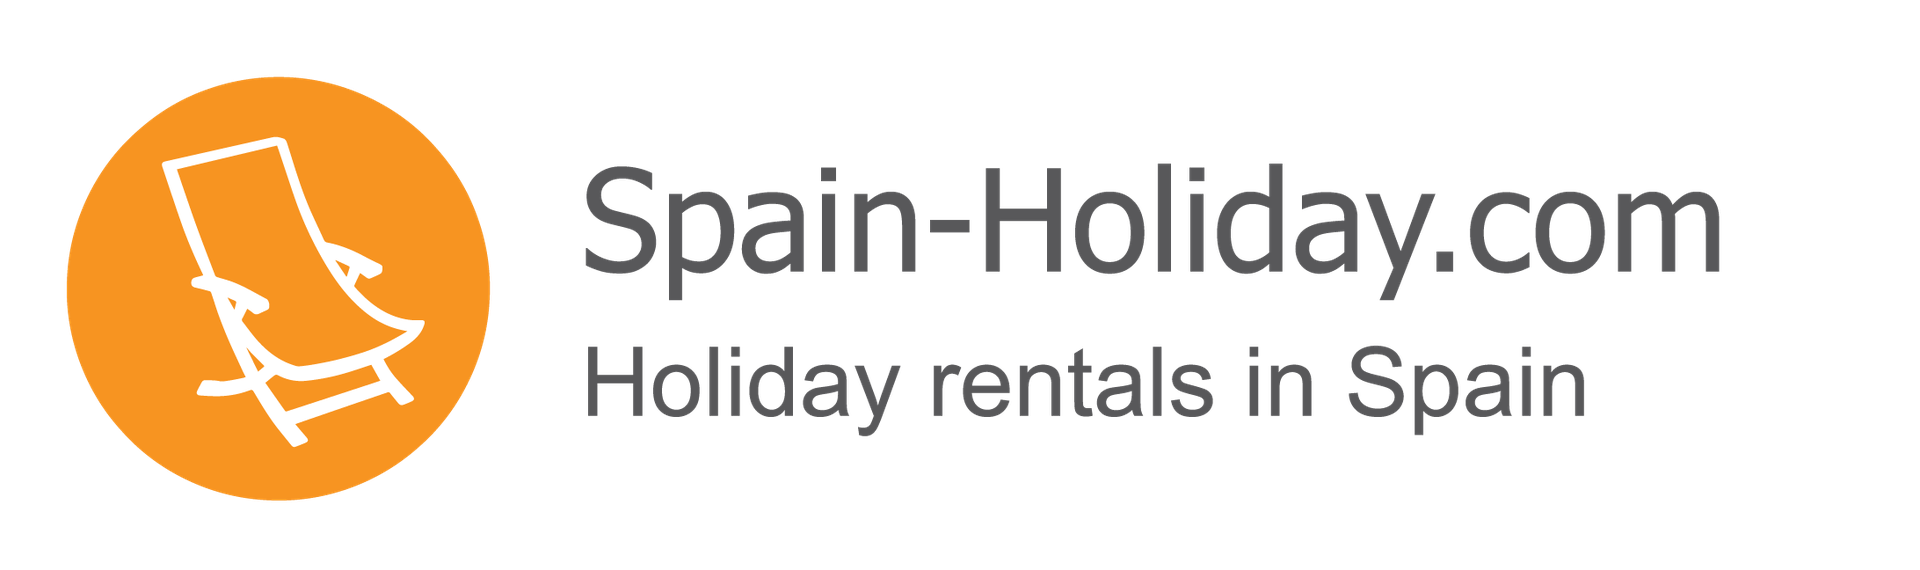 Spain-Holidays.com